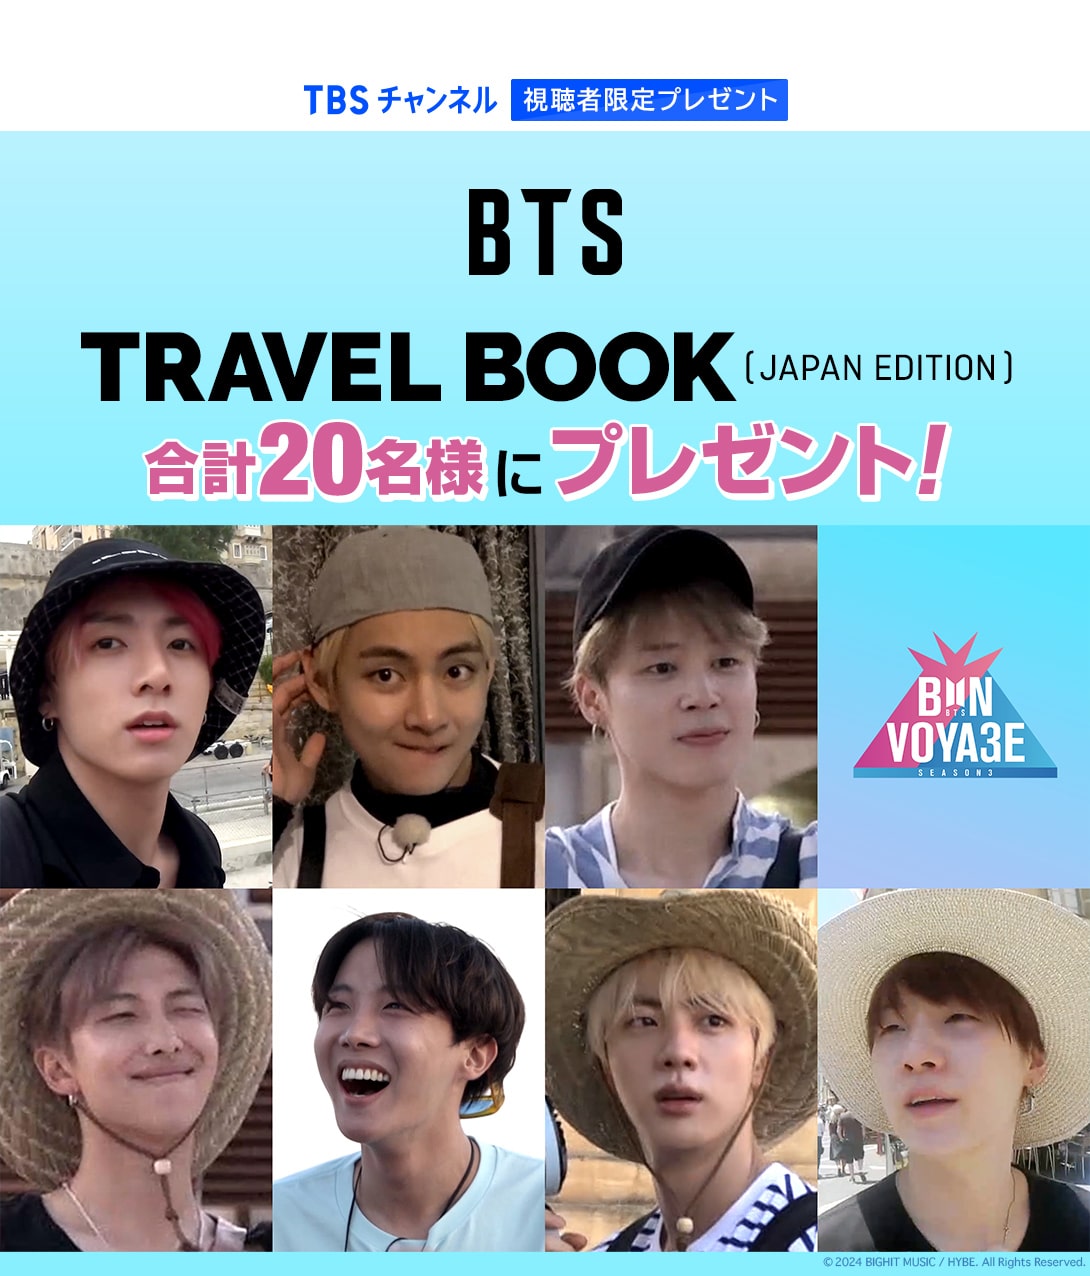 TBSチャンネル 視聴者限定プレゼント BTS TRAVEL BOOK (JAPAN EDITION)を合計20名様にプレゼント！